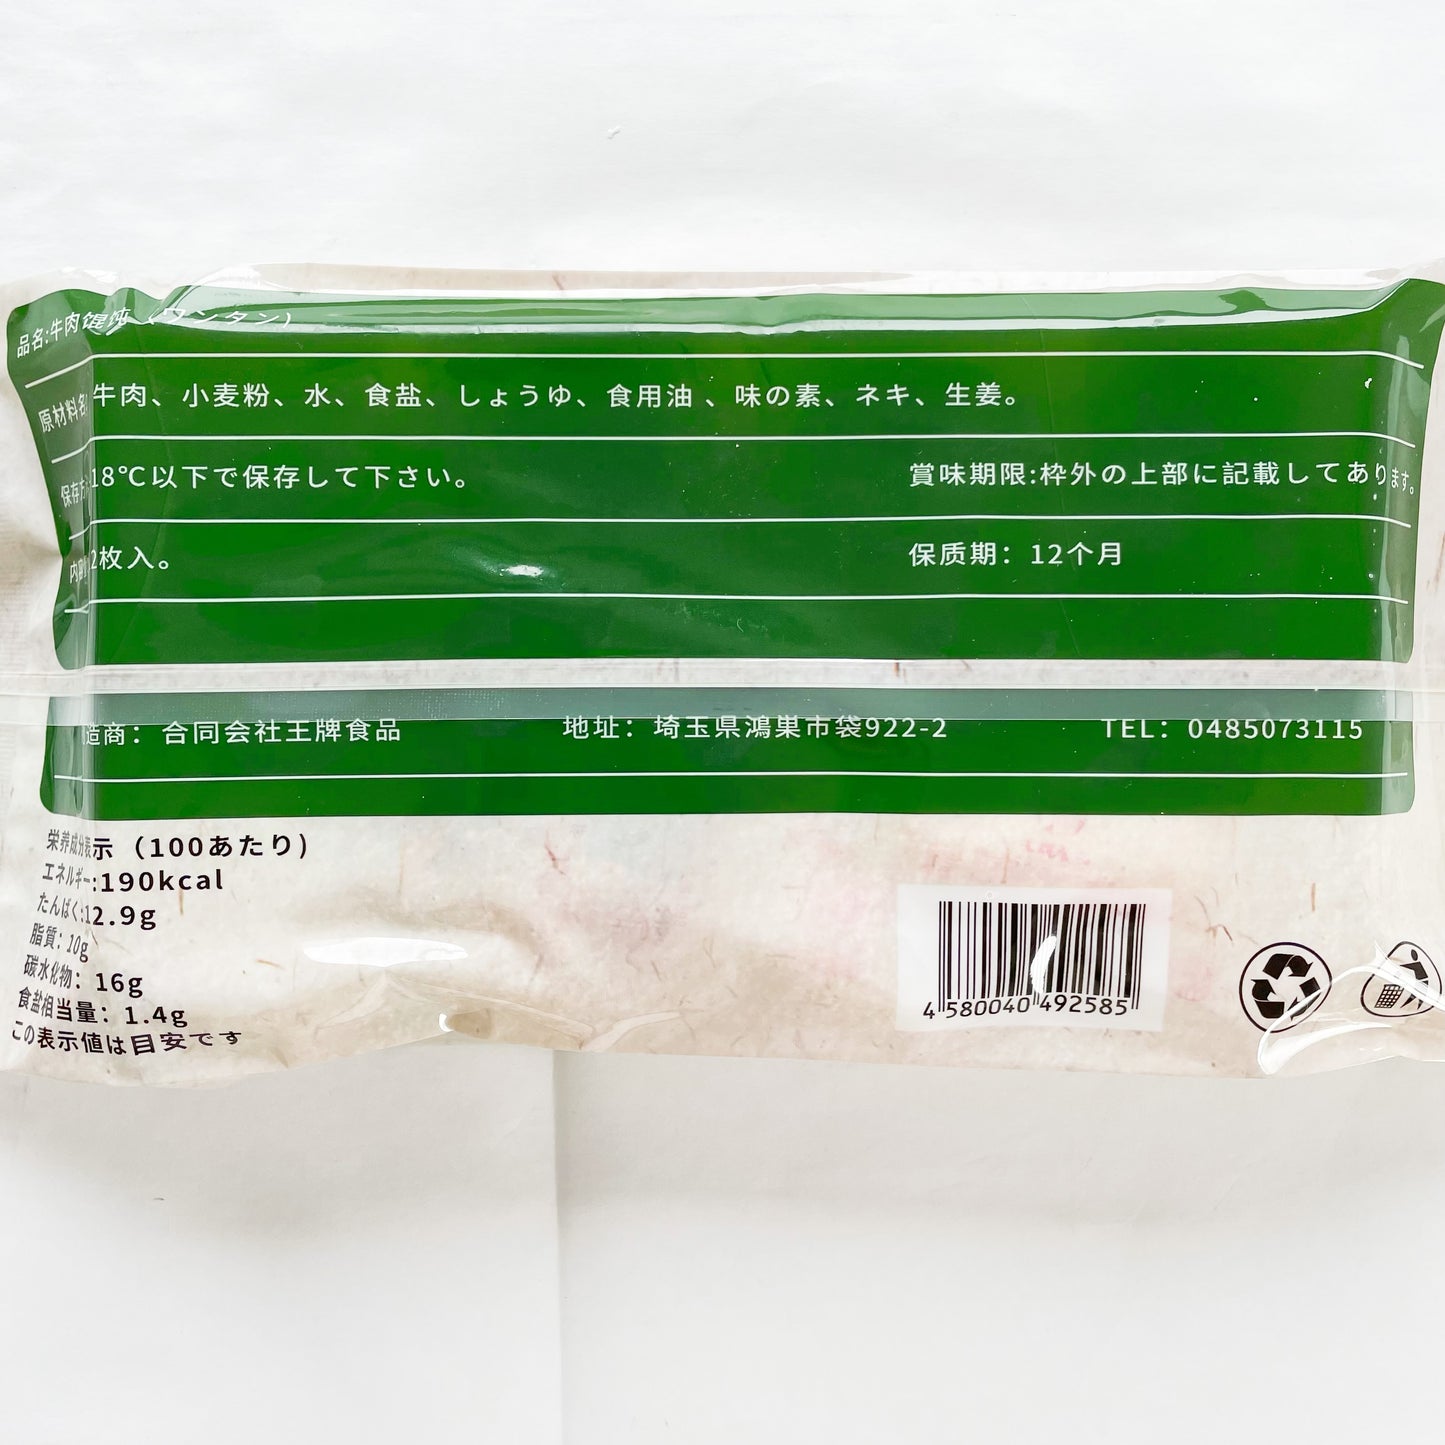 手工 牛肉白蘿蔔雲呑18g*12枚入  日本国内加工  冷凍品